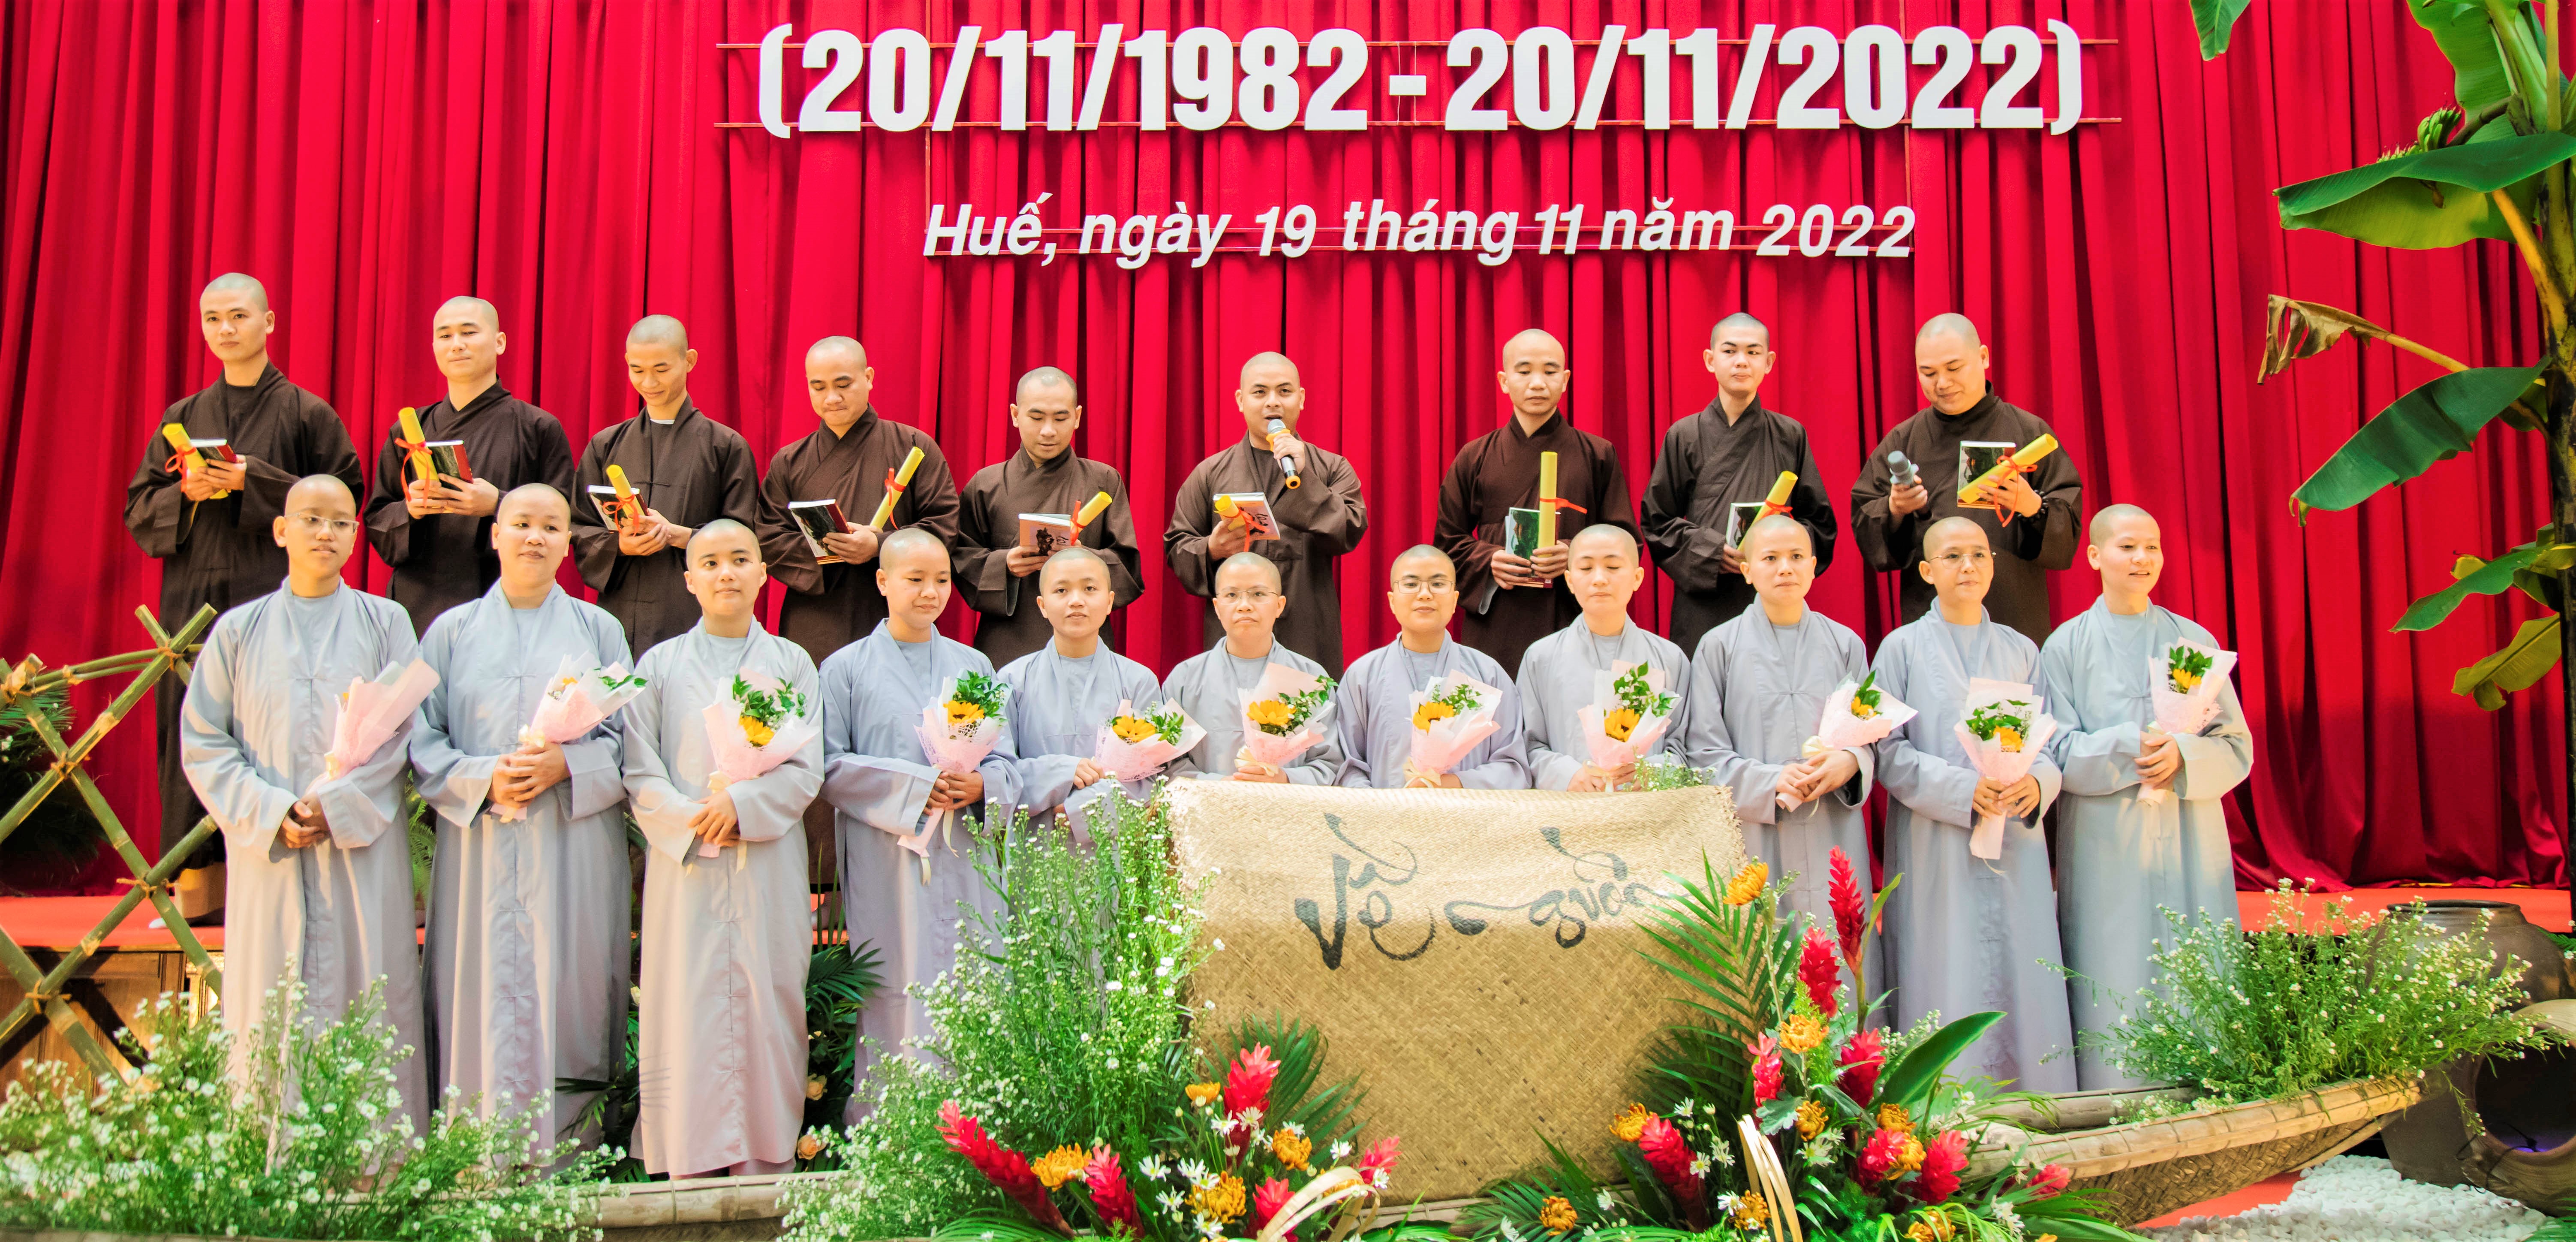 Học viện Phật giáo Việt Nam tại Huế tổ chức kỷ niệm ngày Nhà giáo Việt Nam 20/11